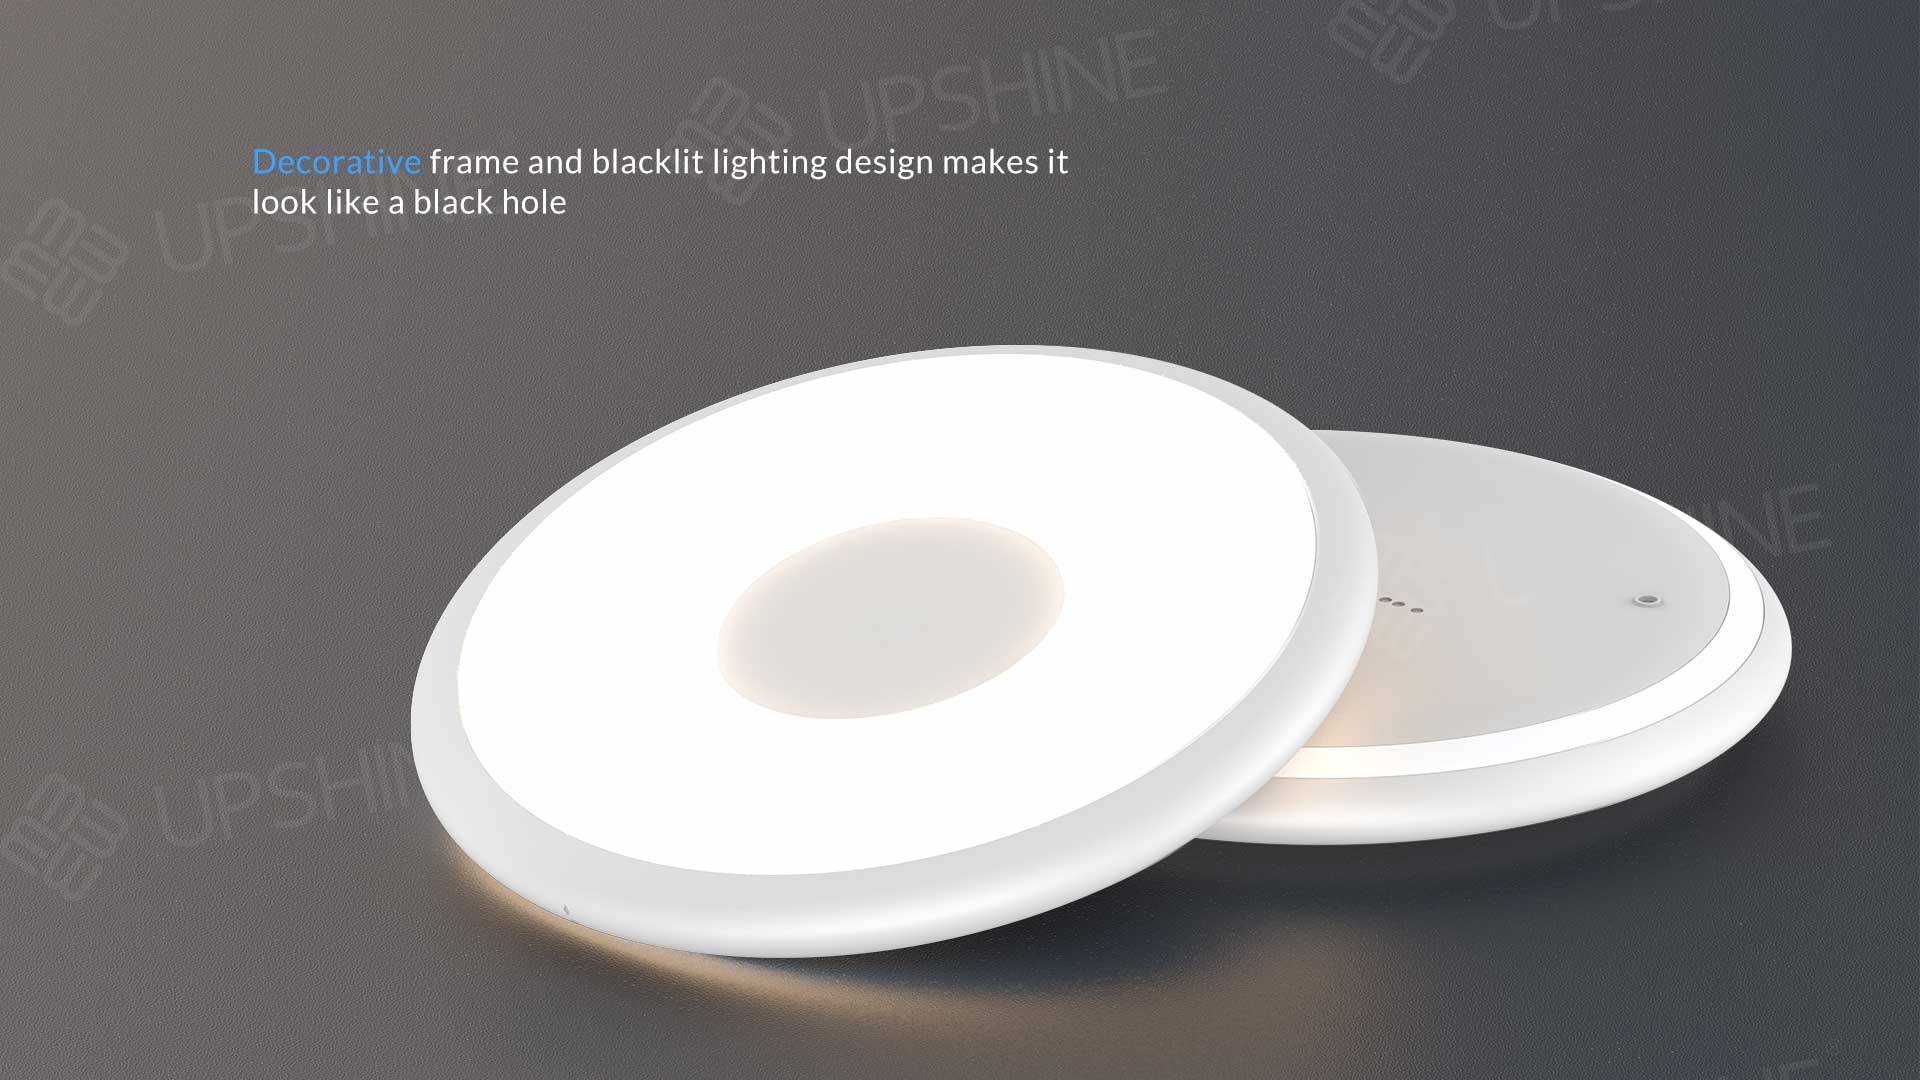 2blacklit  lighting design